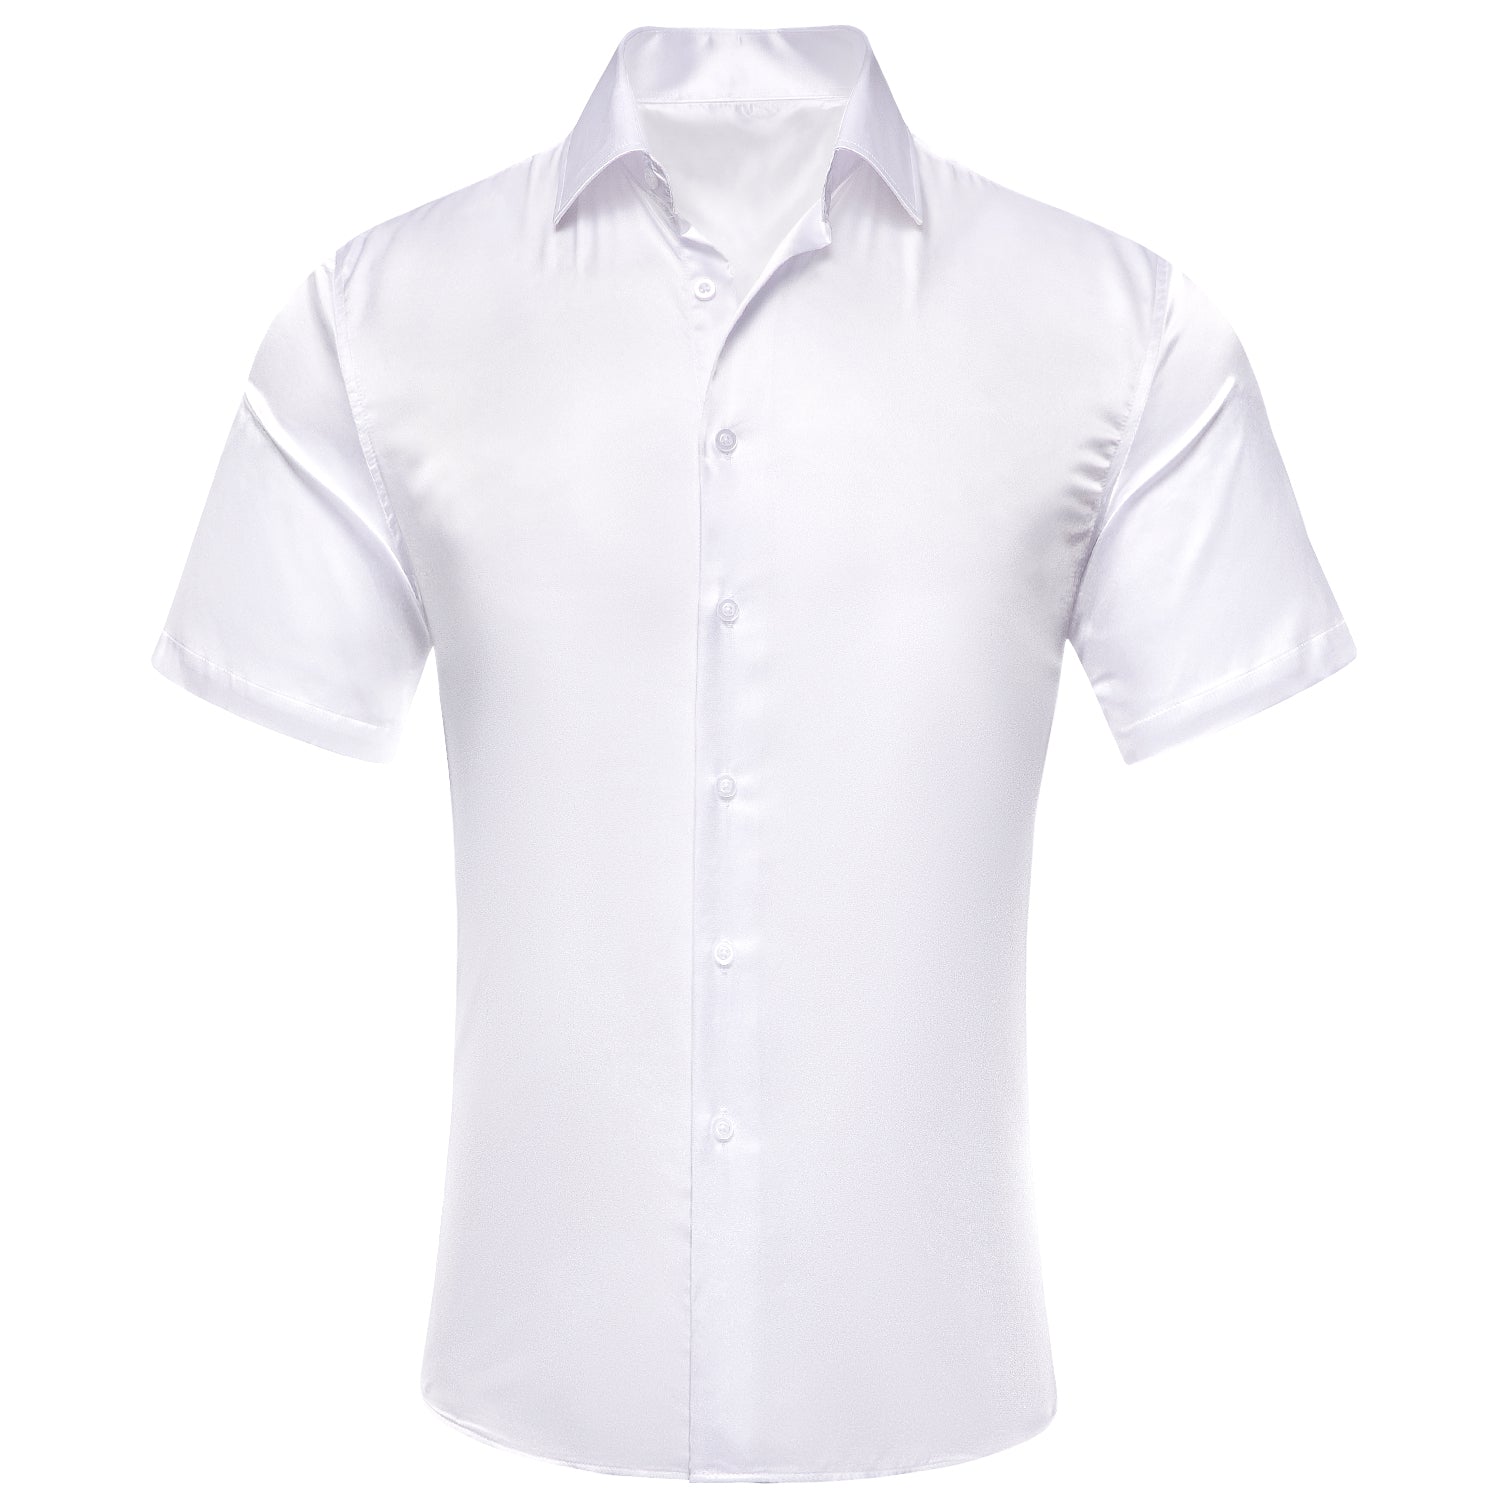 New White Solid Satin Men's Short Sleeve Shirt